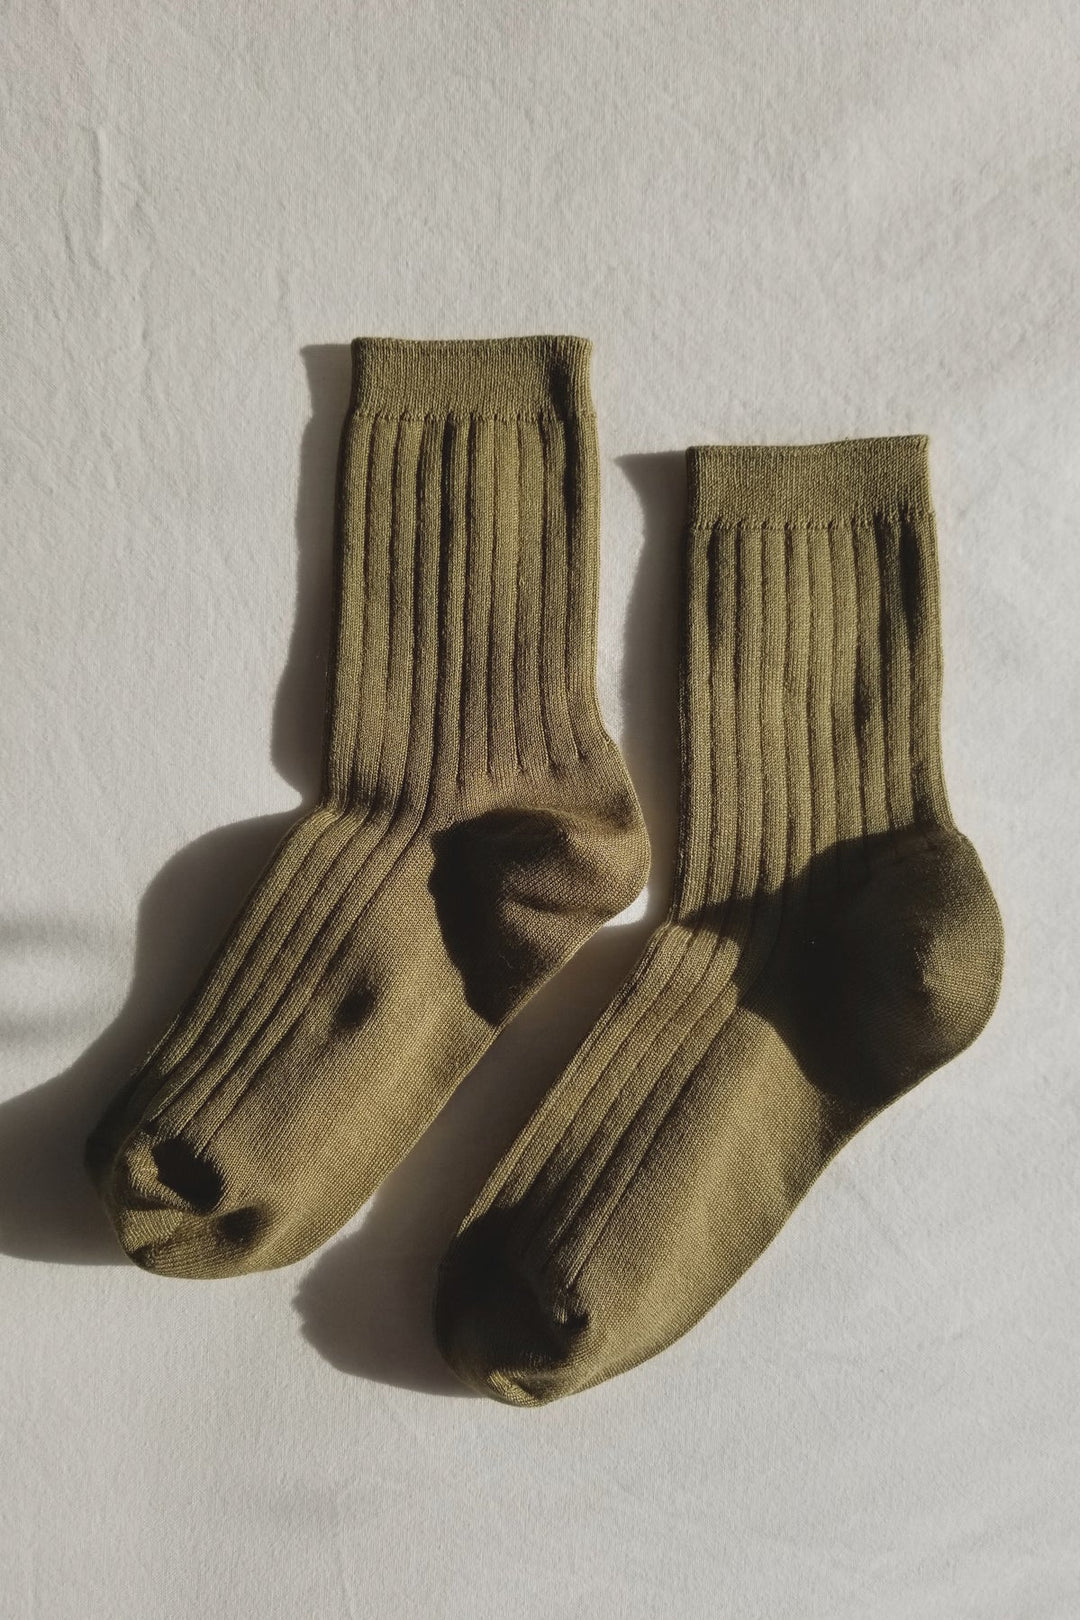 Her Socks - Pesto